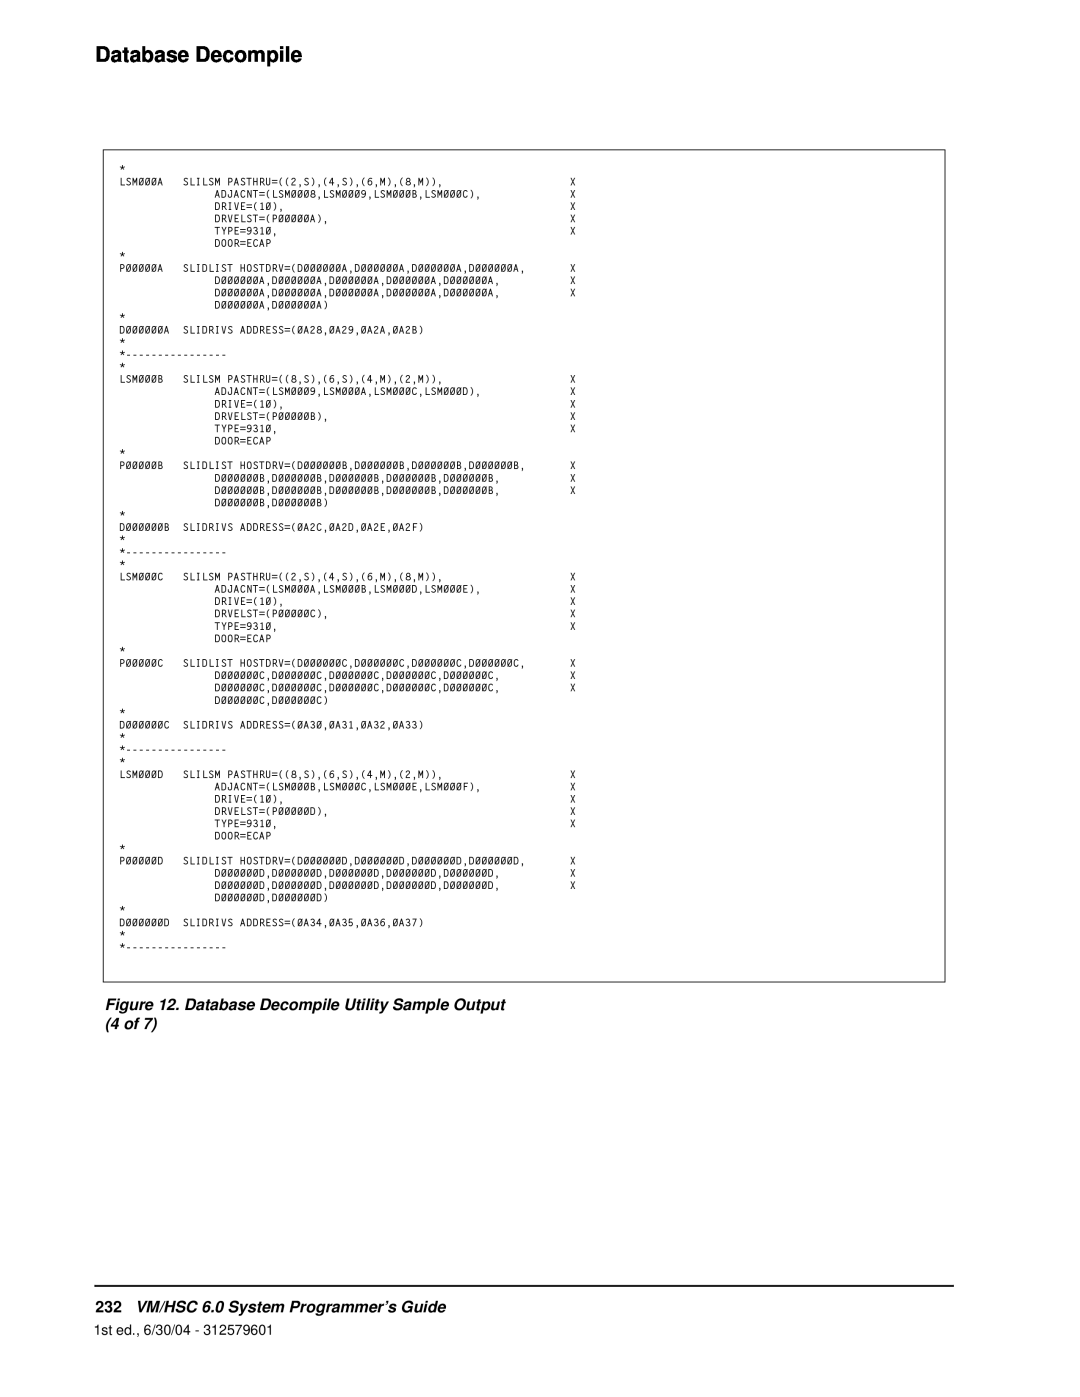 StorageTek manual Database Decompile, 232VM/HSC 6.0 System Programmer’s Guide, 1st ed., 6/30/04 